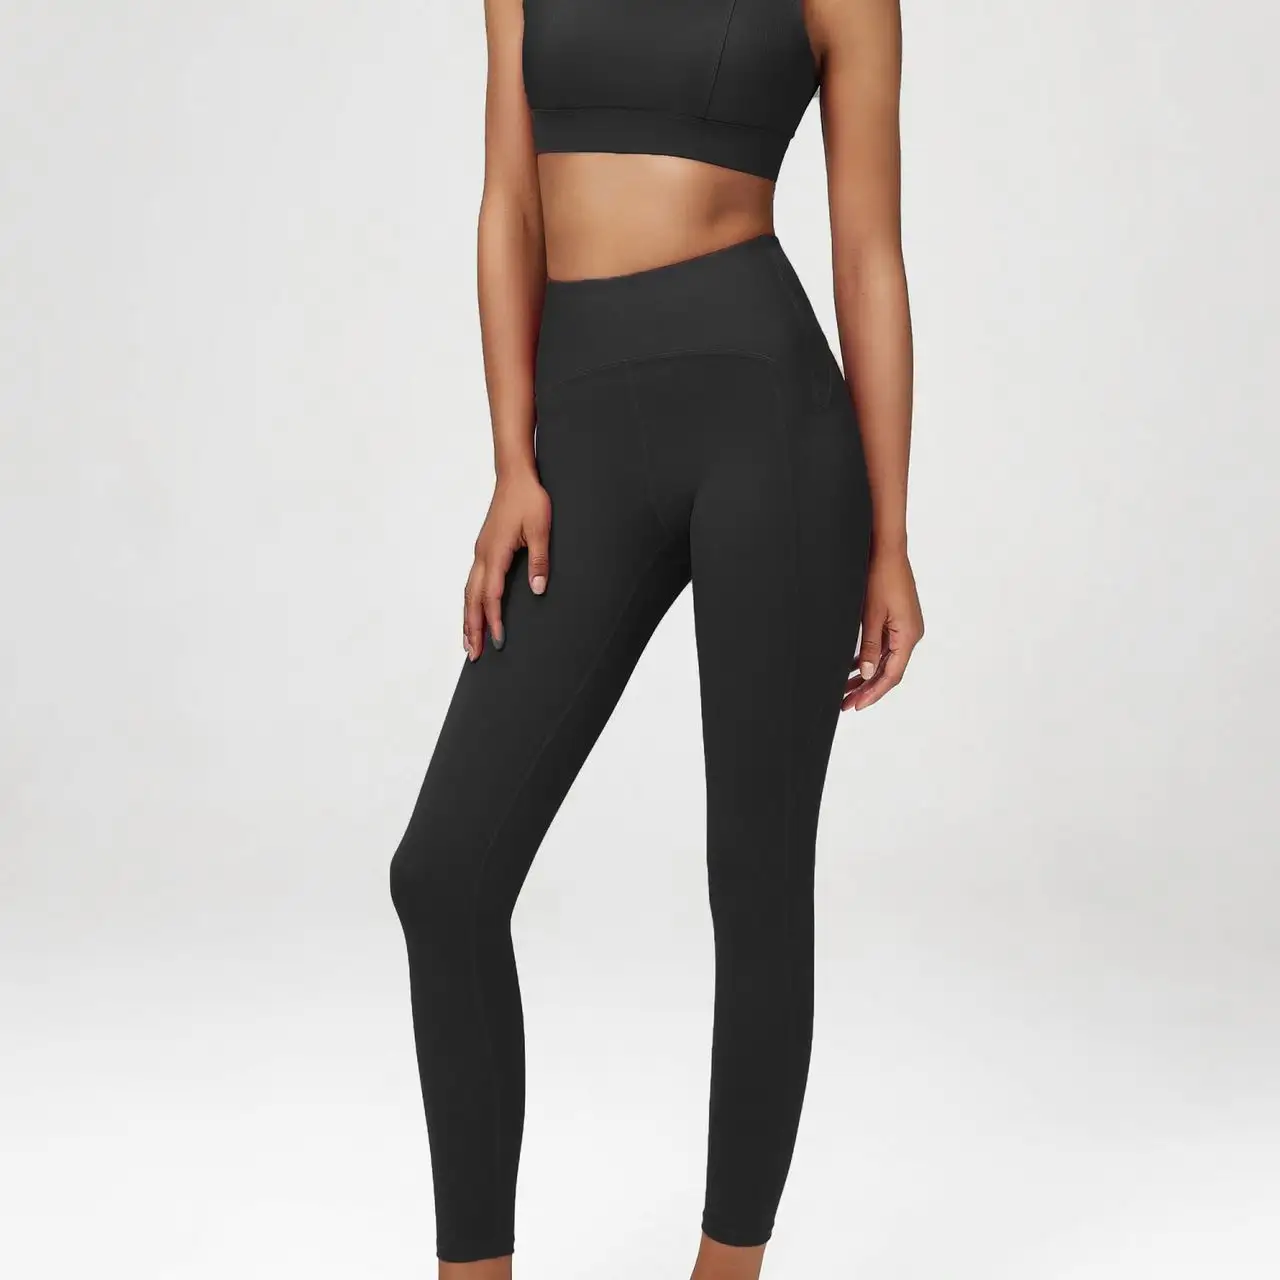 Grosir produk baru celana Yoga olahraga wanita dengan legging Gym kustom pabrik